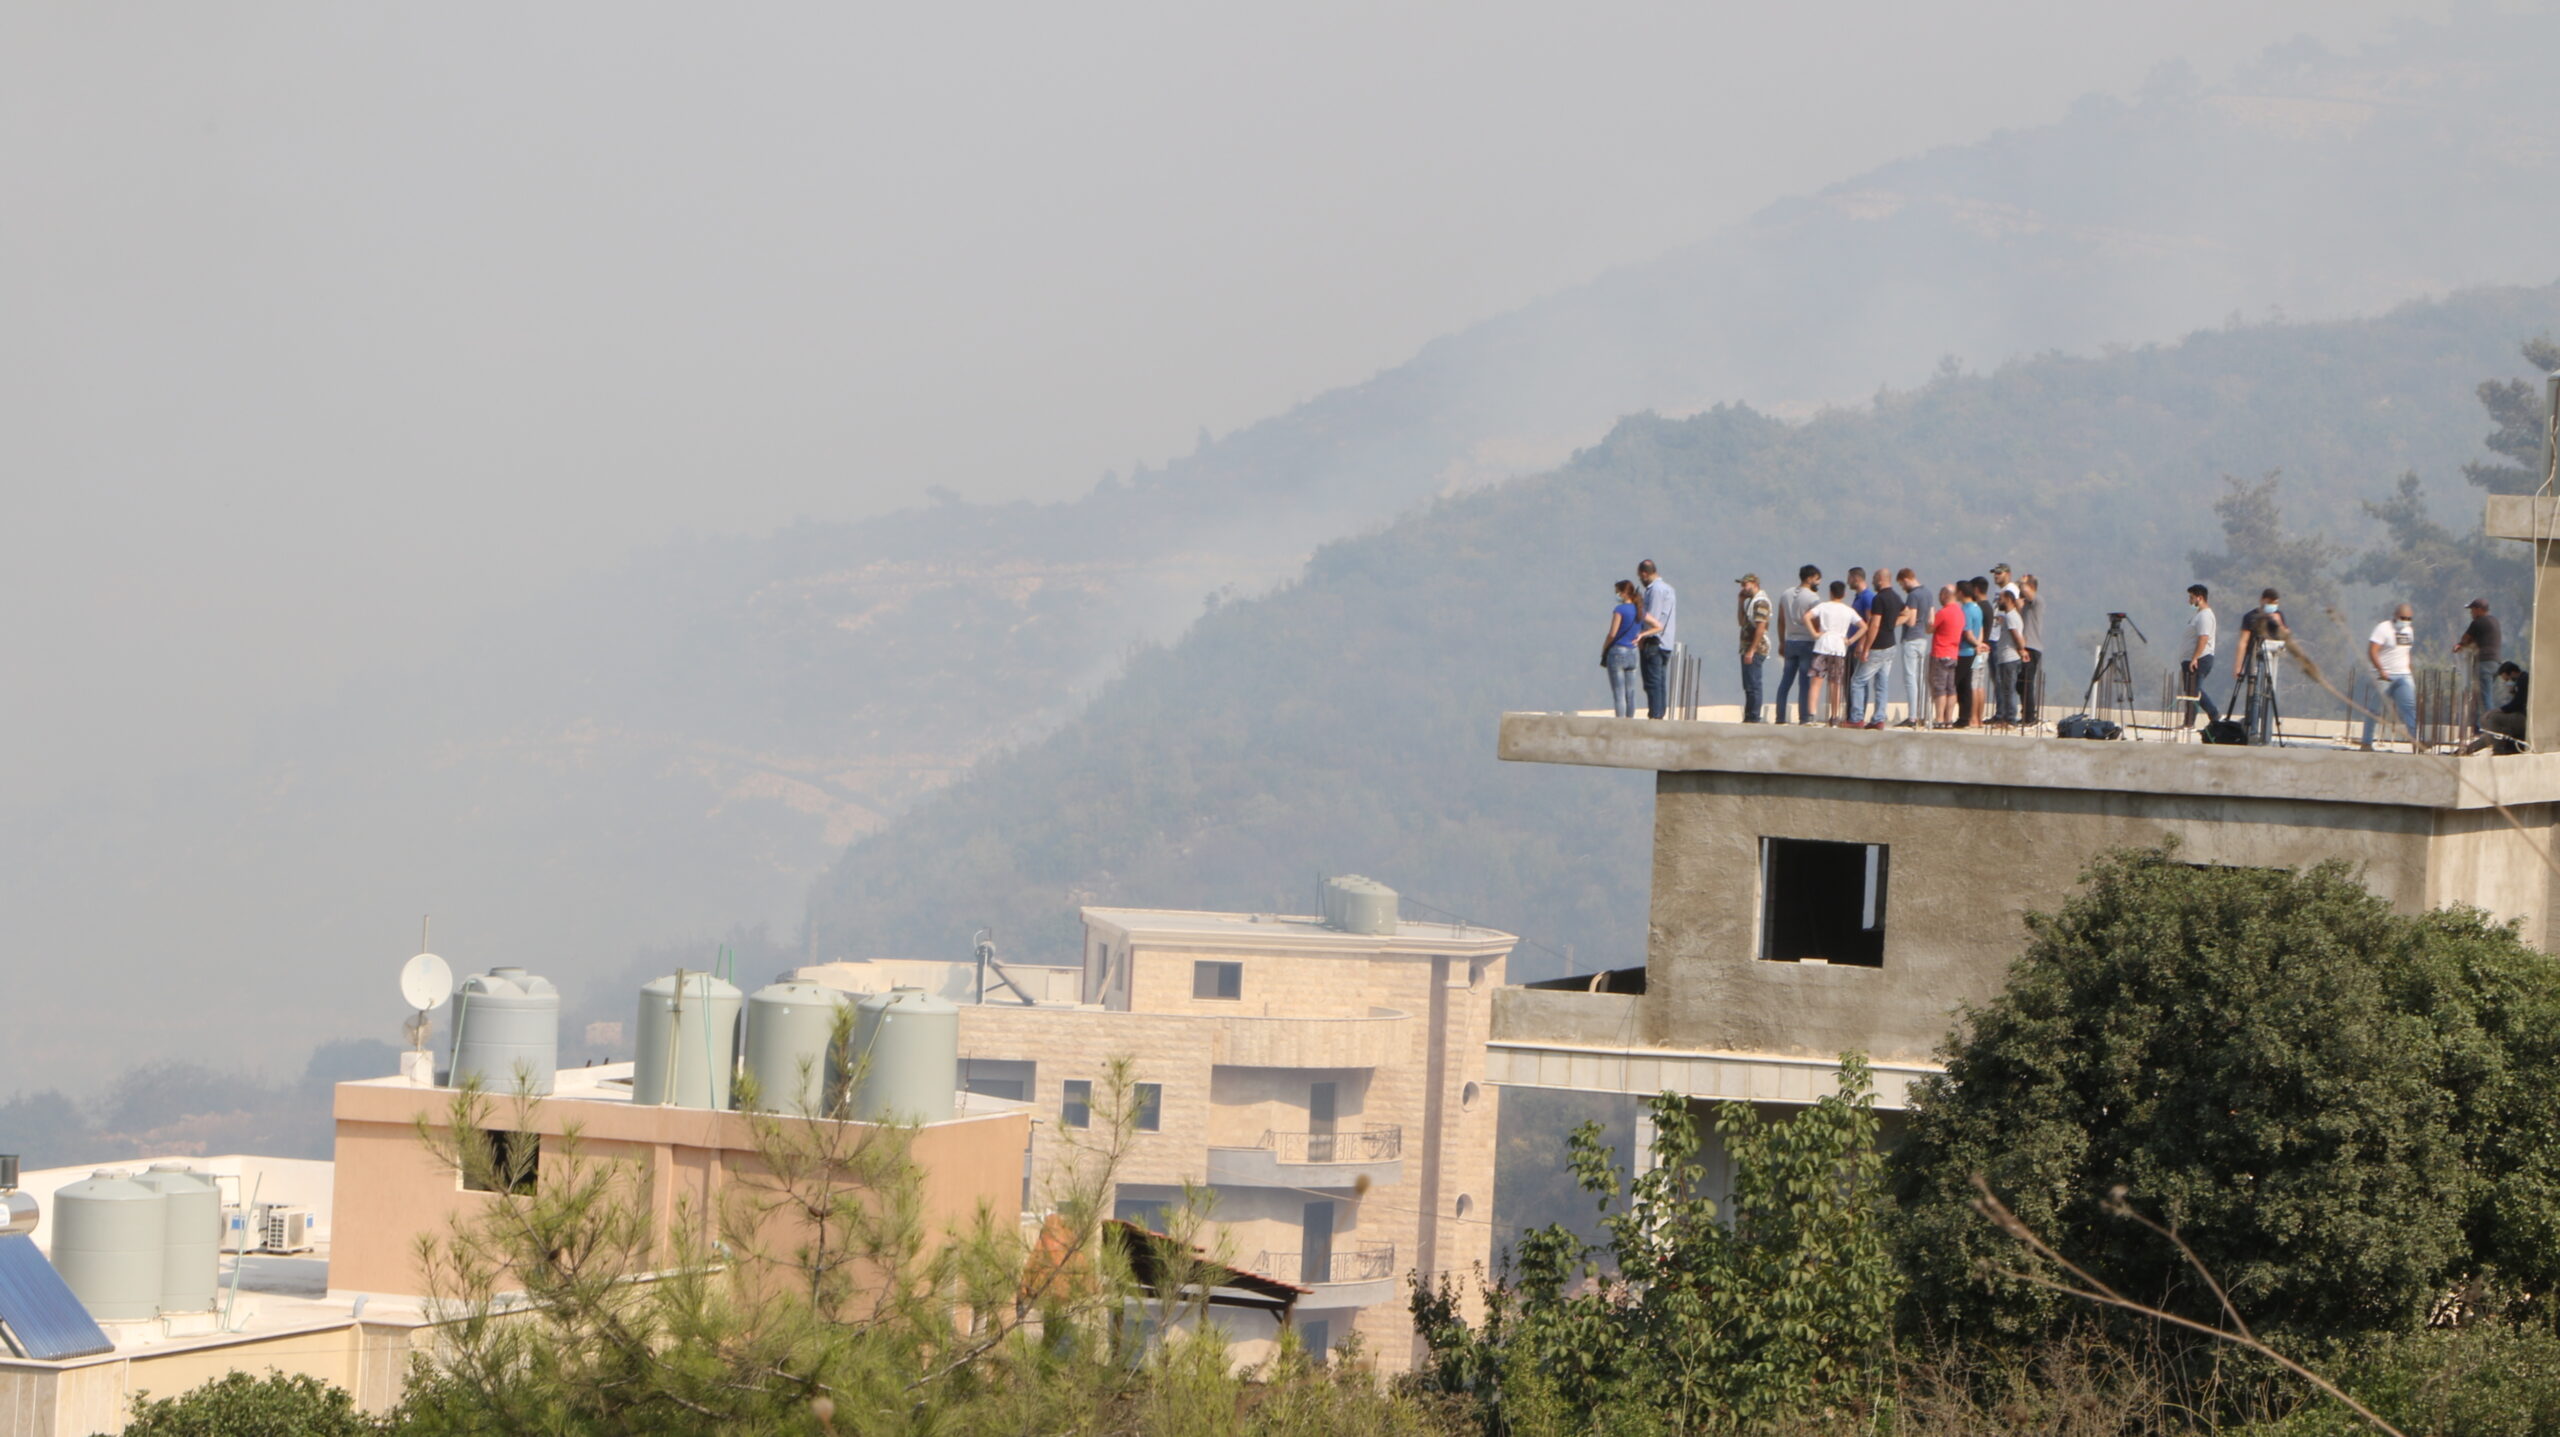 الحرائق تلتهم أحراج لبنان وسط تقاذف للمسؤوليات: المفكرة تنشر القصة الكاملة لطوافات سيكورسكي